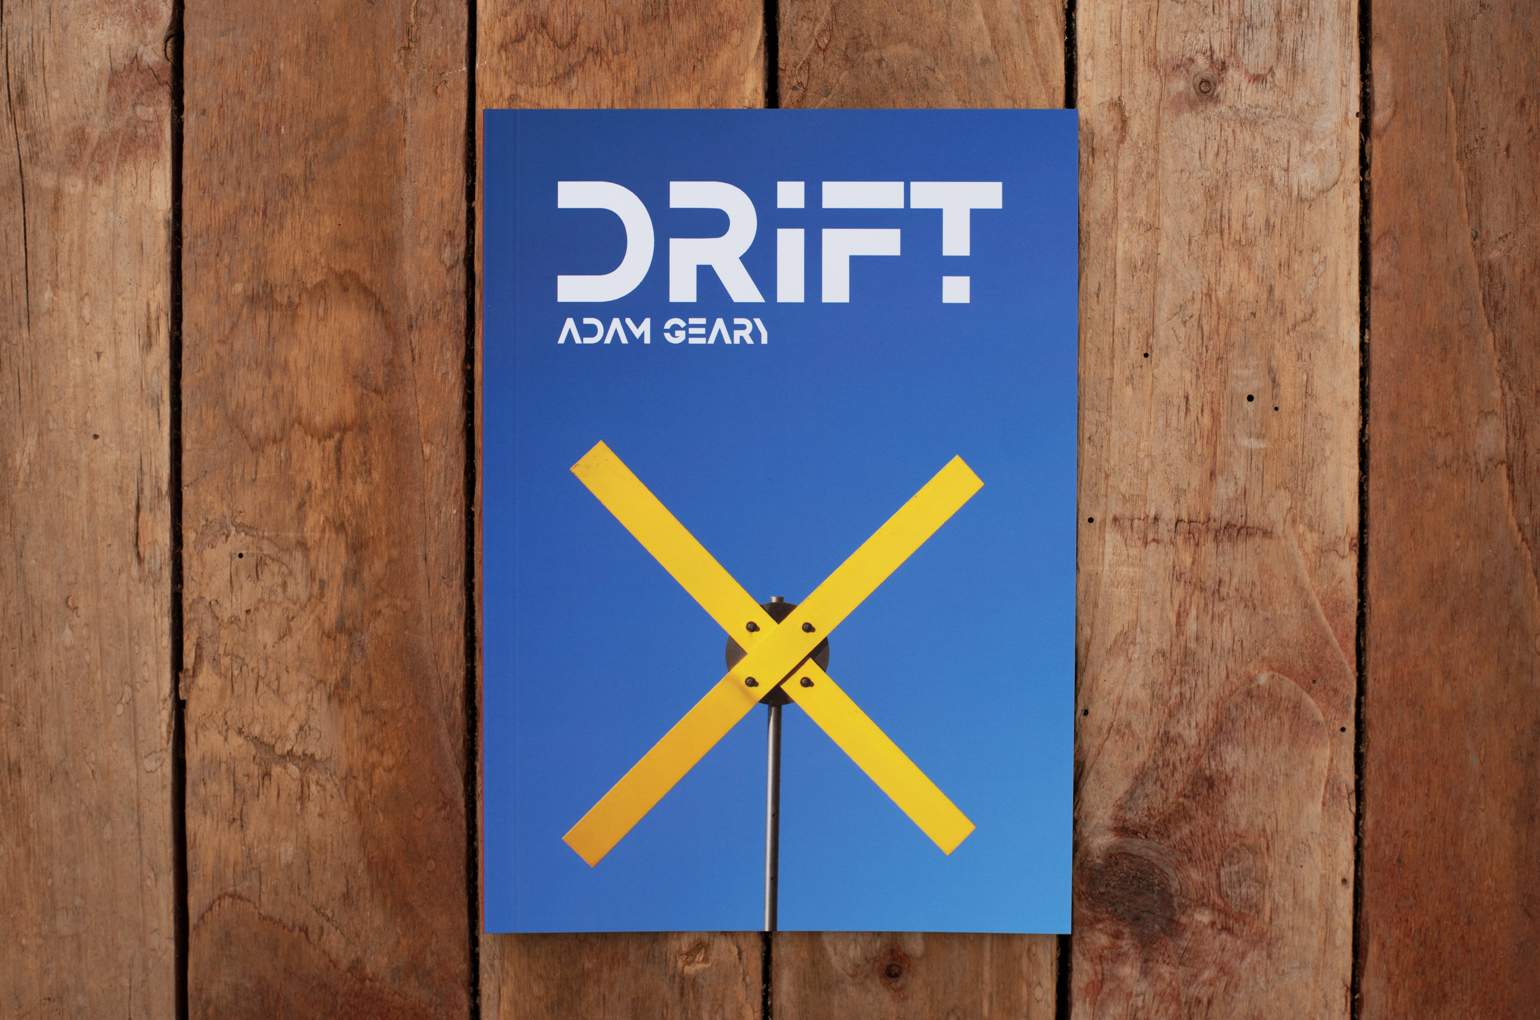 Drift book